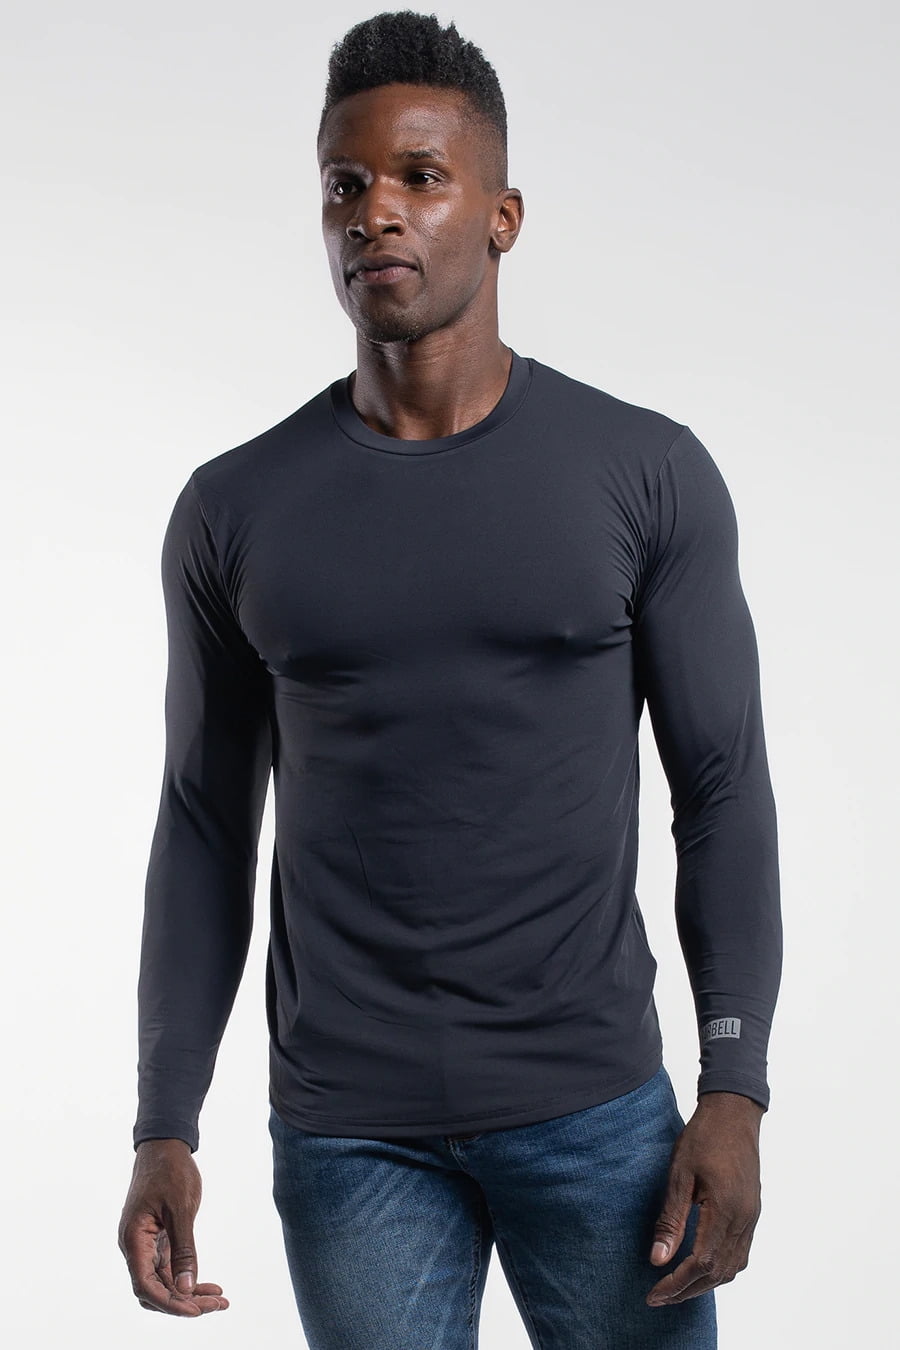 Sport Long Sleeve Shirt Sport T Shirt, Lycra Men, Long, 46% OFF